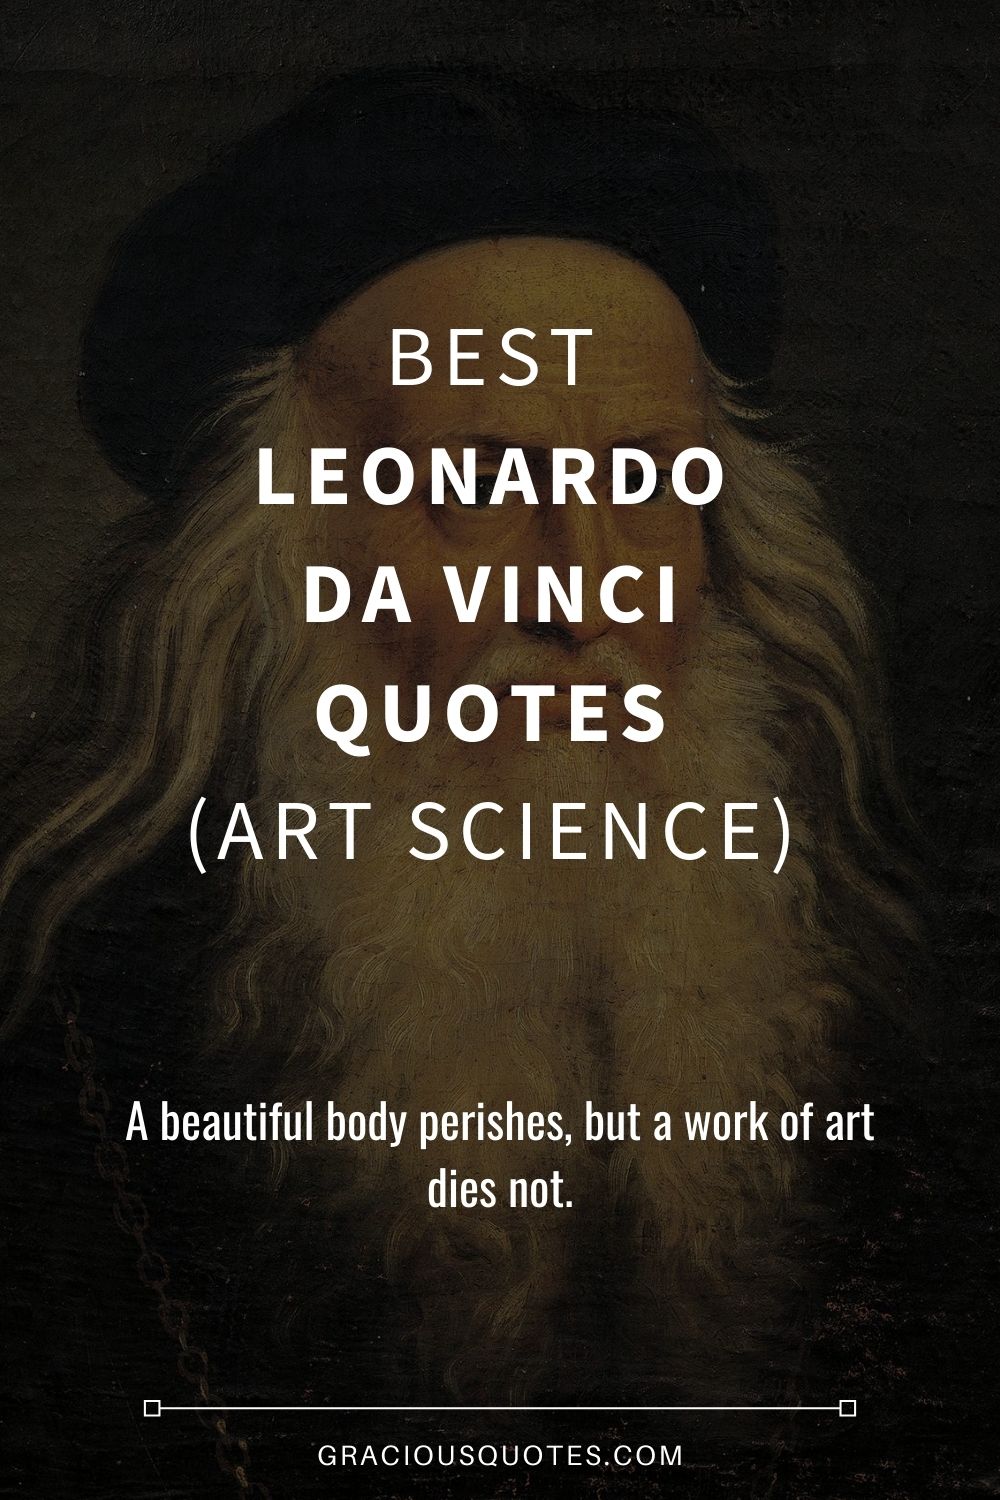 Best Leonardo da Vinci Quotes (ART SCIENCE) - Gracious Quotes